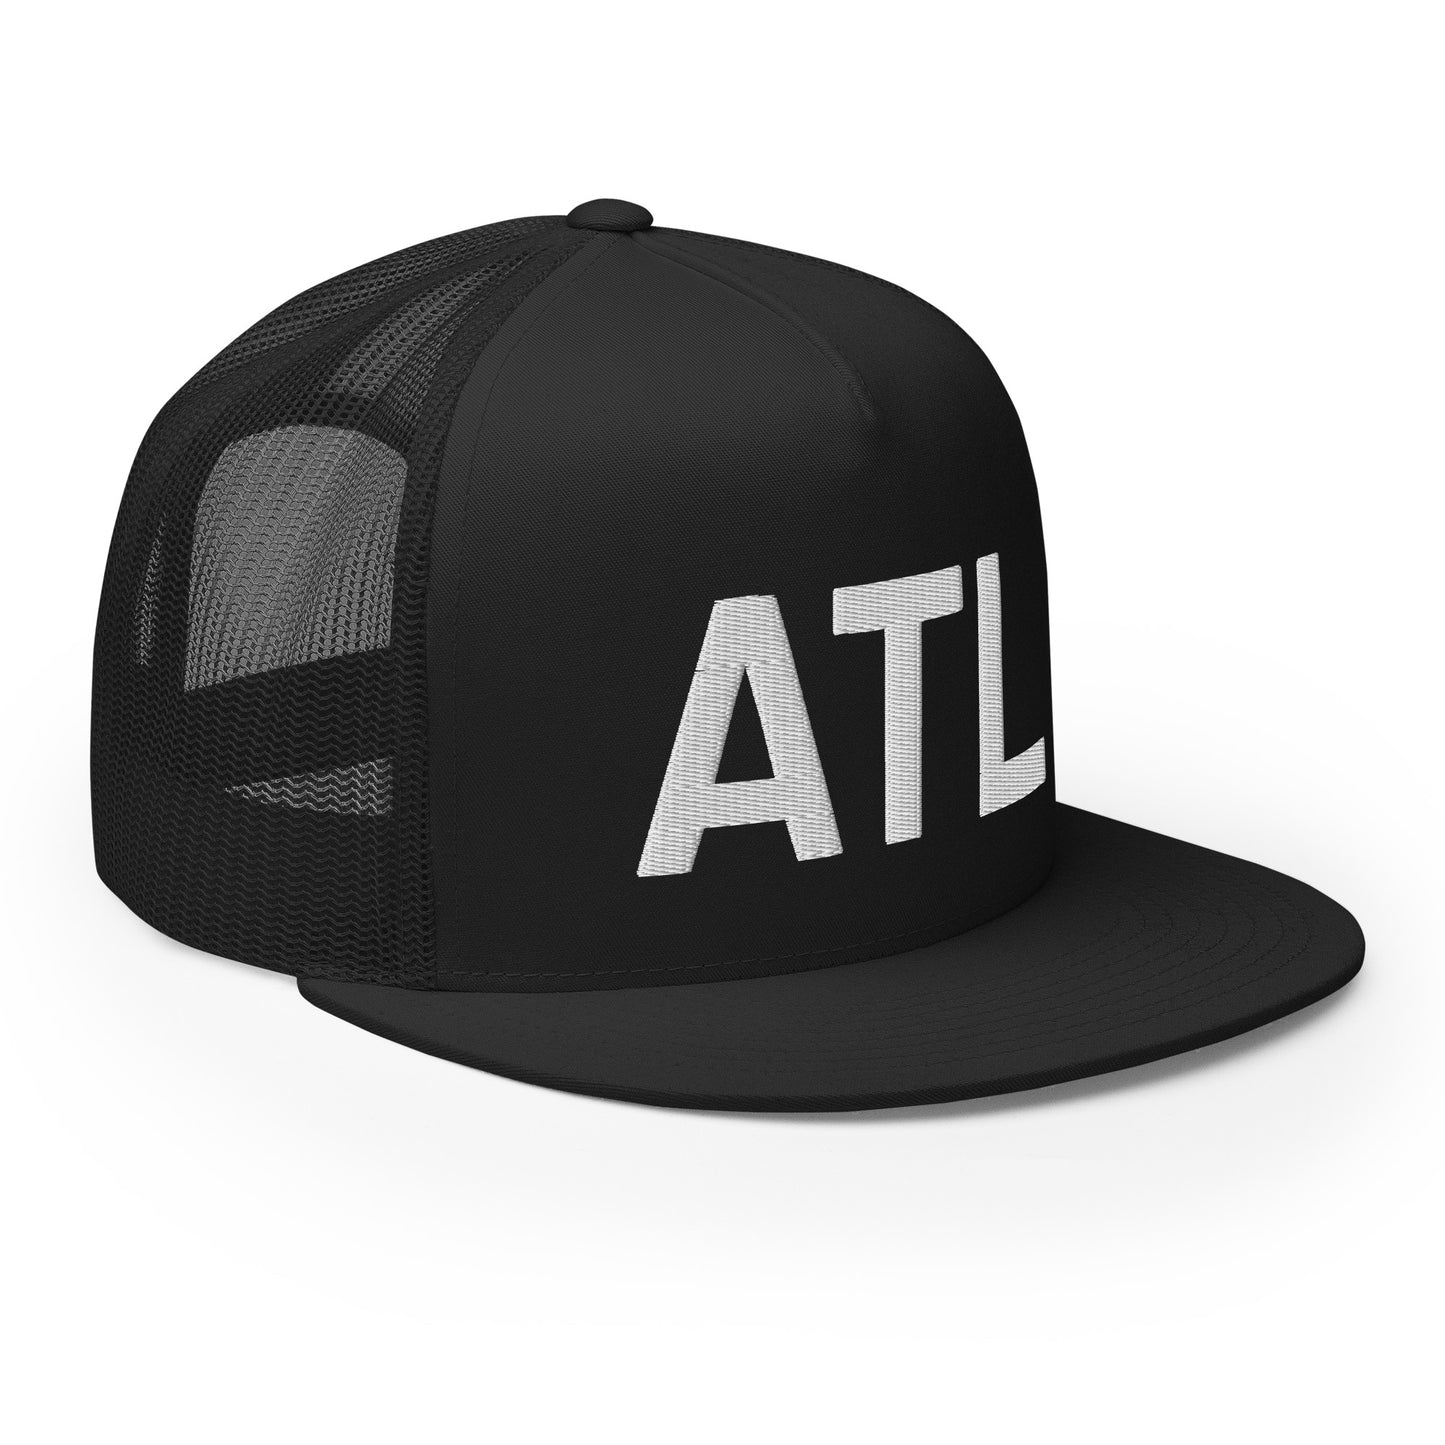 ATL Trucker Hat